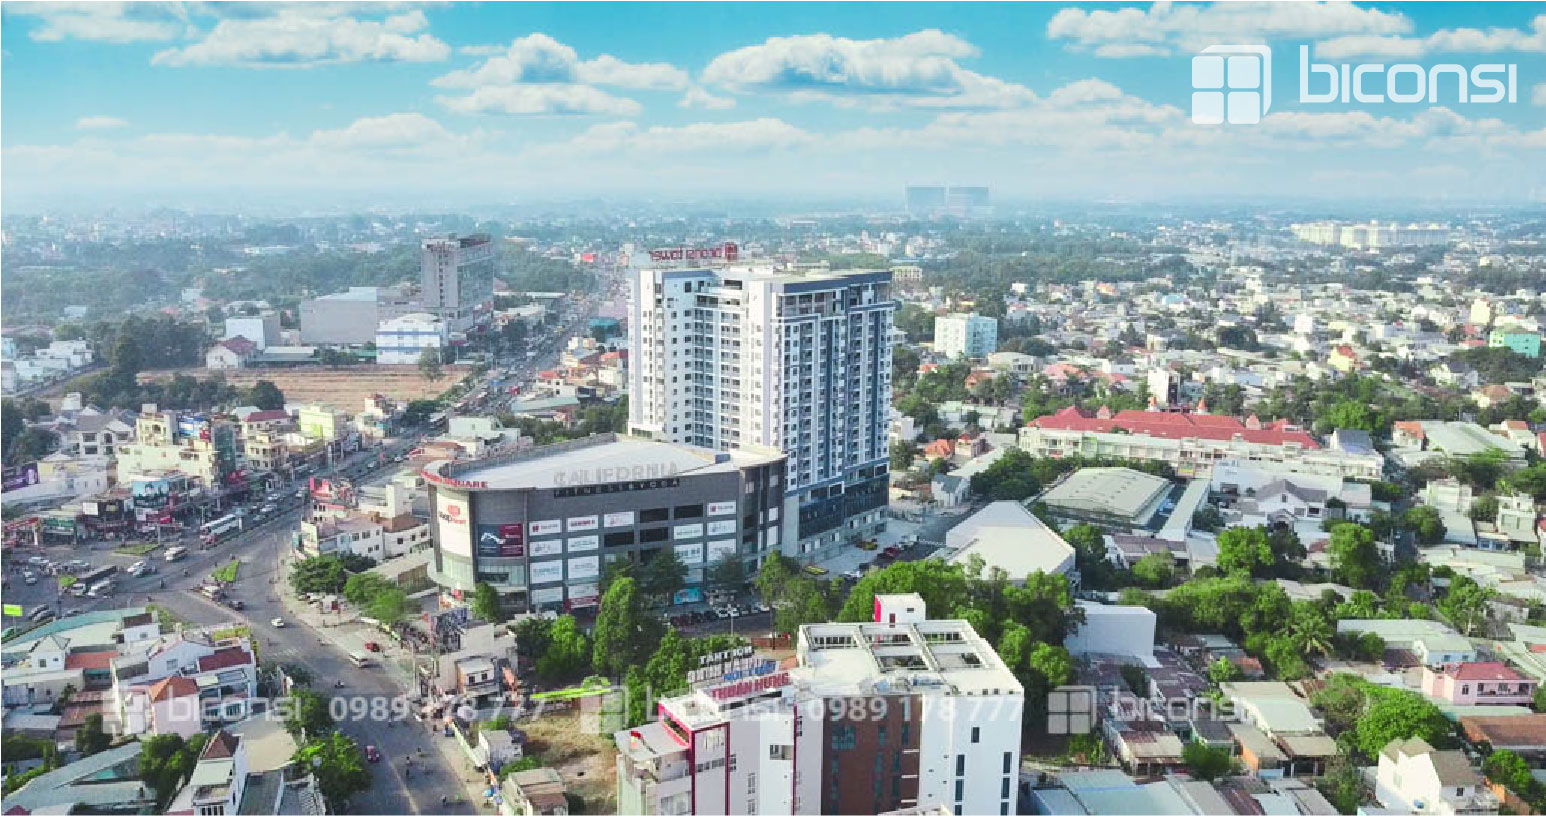 Đánh giá dự án Biconsi Tower: Căn hộ 38 triệu/m2 tại trung tâm Thủ Dầu Một có đáng mua không?